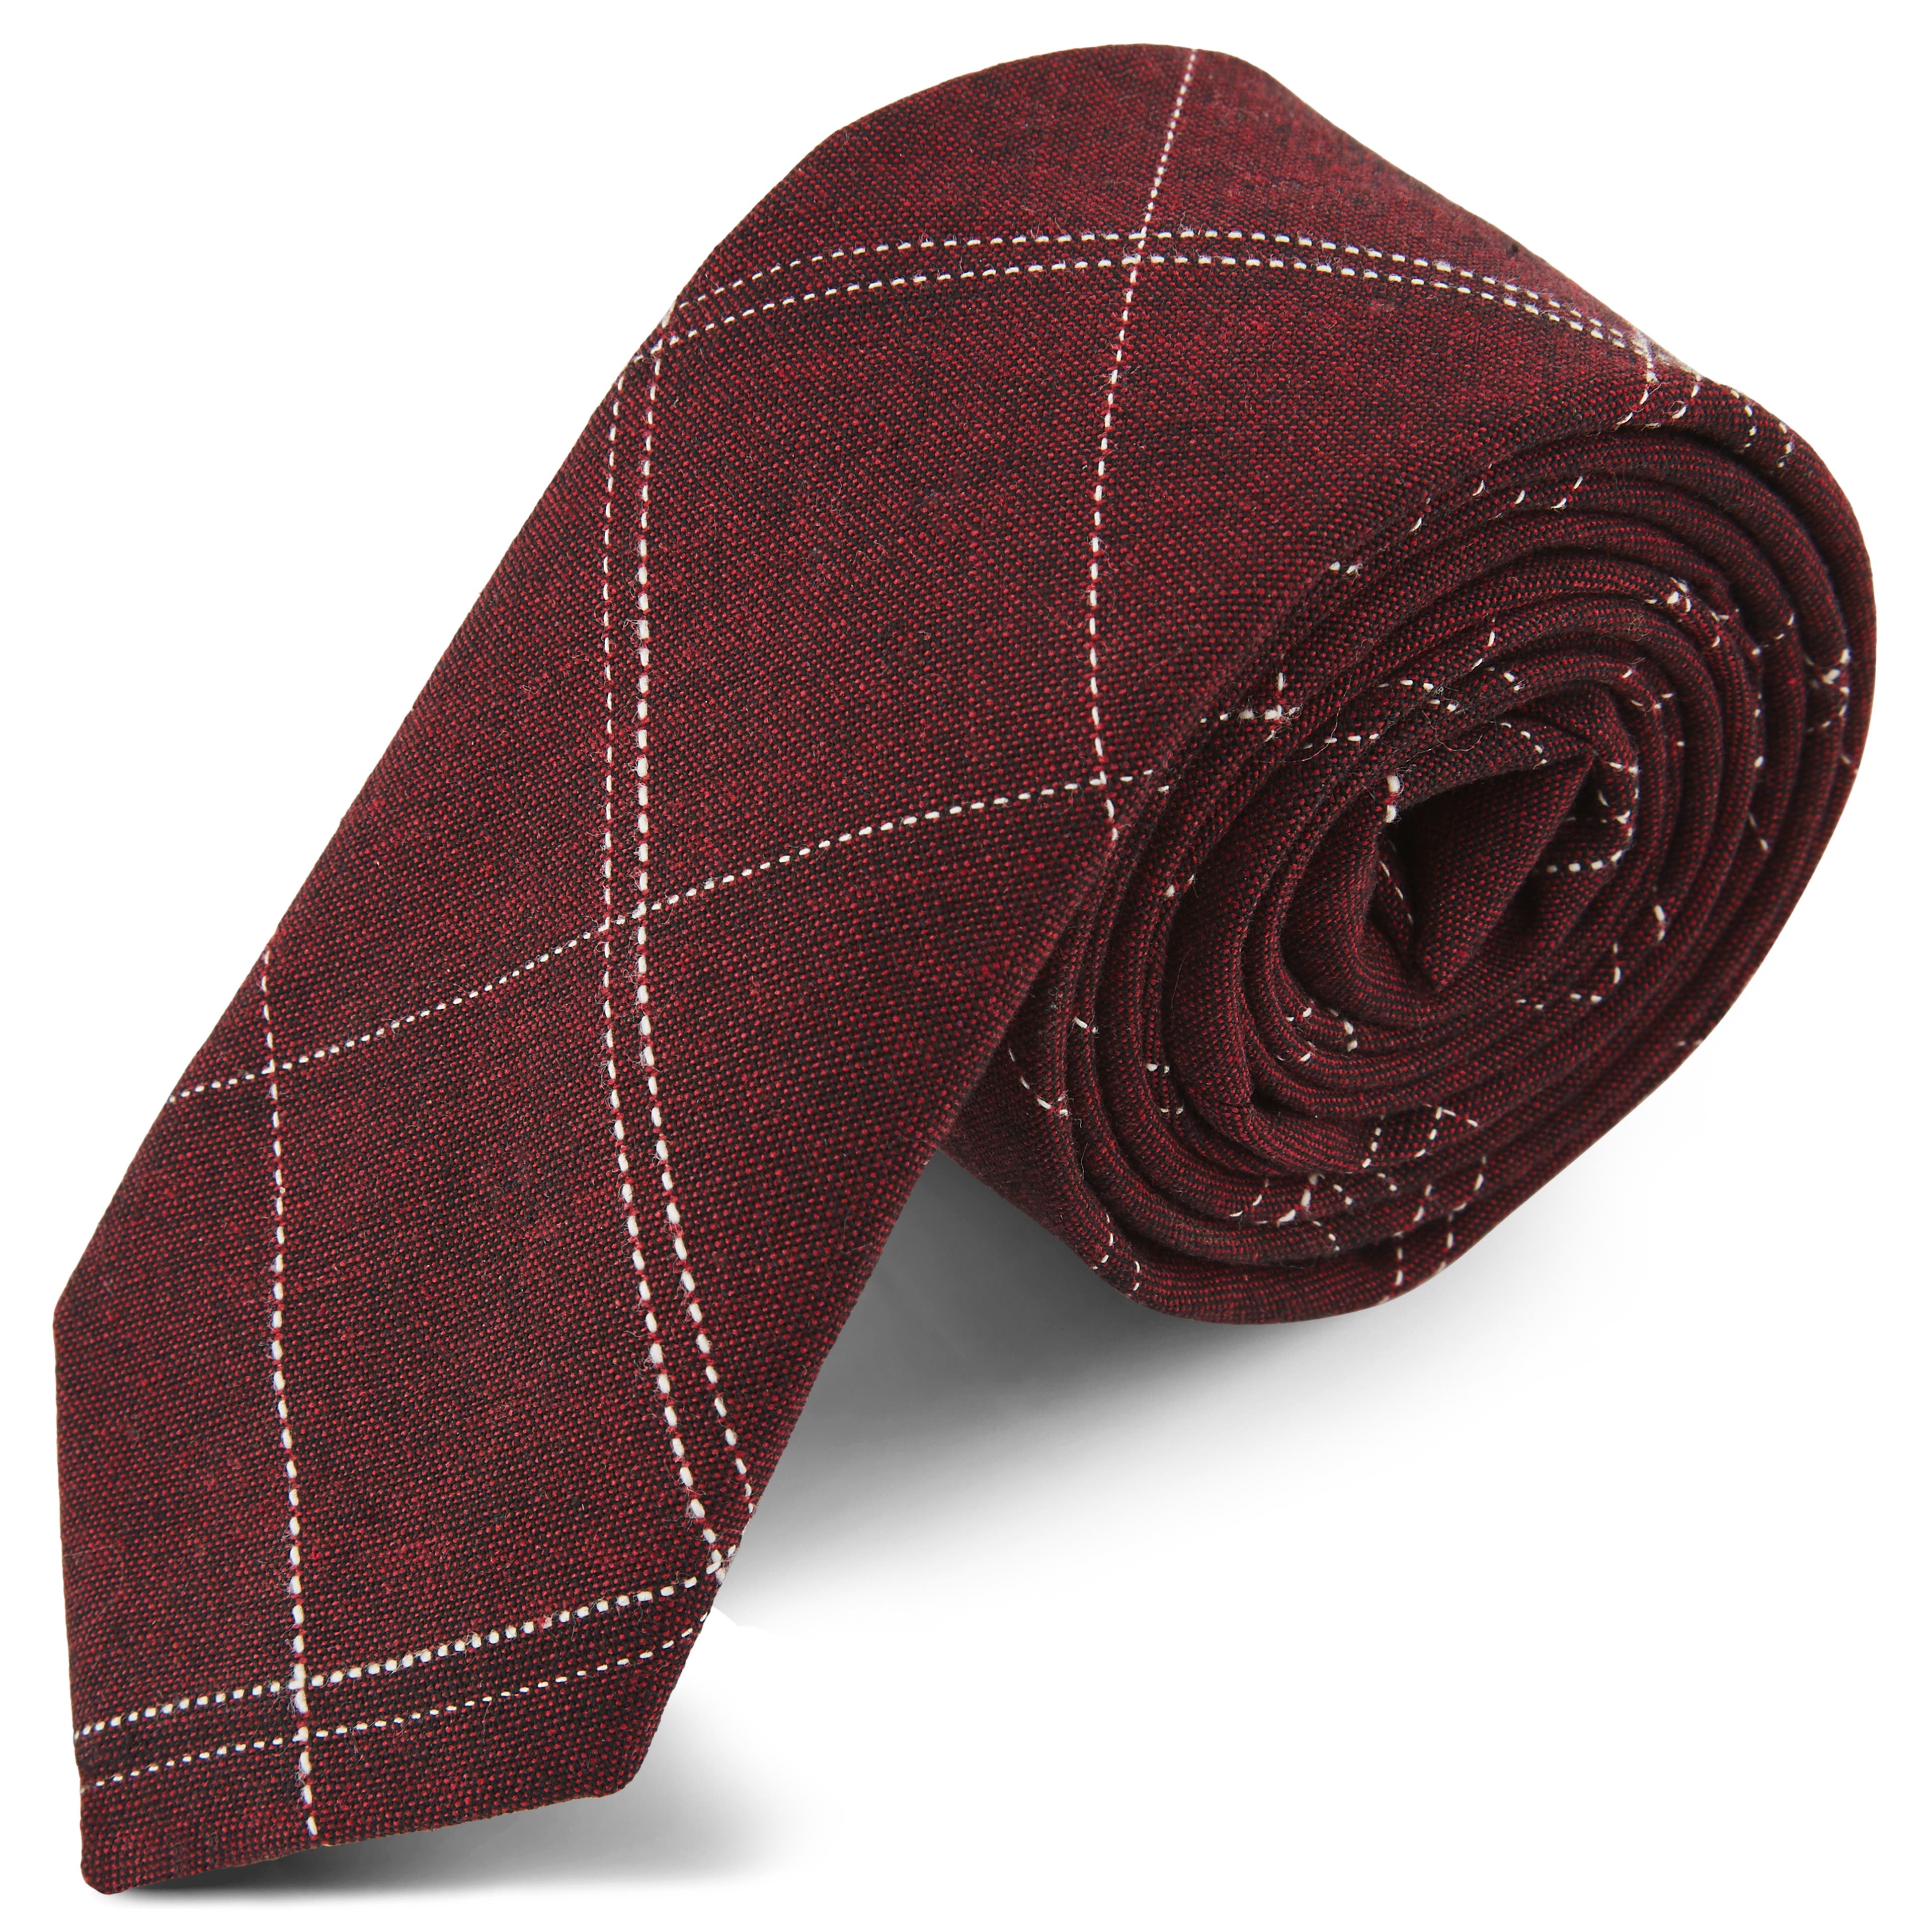 Burgundy Stitched Tie